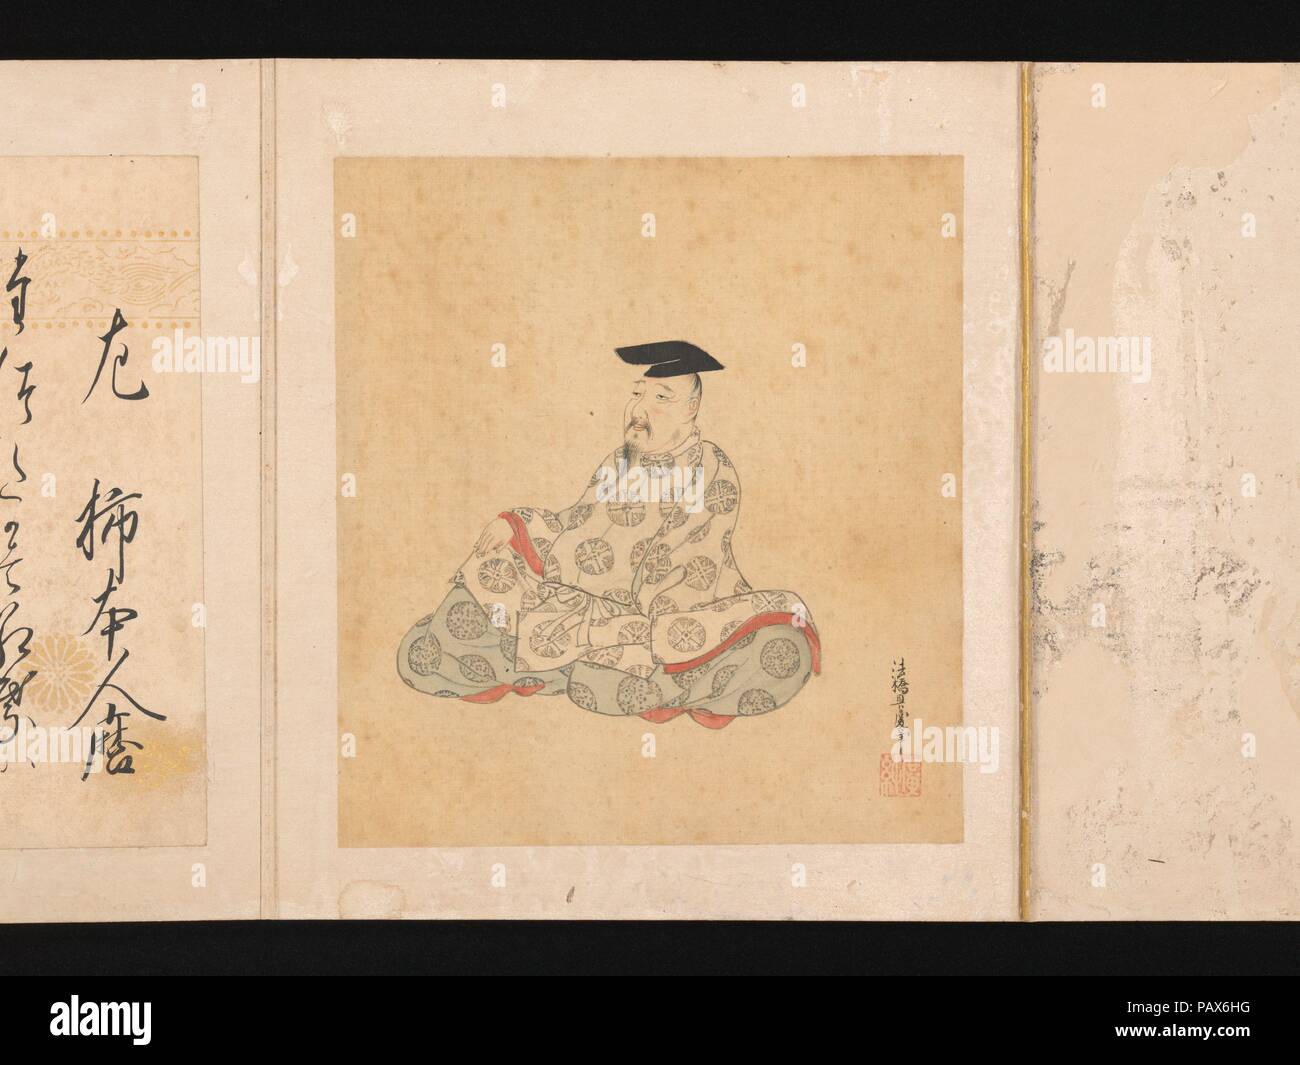 Ritratti e poesie di trentasei poetico immortali (Sanjurokkasen). Artista: Sumiyoshi Gukei (giapponese, 1631-1705). Cultura: il Giappone. Dimensioni: immagine (ogni foglia): 6 7/8 × 6 5/16 in. (17,4 × 16 cm) Album: 8 3/4 × 7 11/16 × 2 5/8 in. (22,3 × 19,5 × 6,7 cm). Data: 1674-92. Questo album contiene i ritratti immaginari di trentasei di venerati maestri della poesia dalla Nara (710-794) e Heian (794-1185) periodi, ciascuno accompagnato da uno dei suoi versi sulla pagina a fronte. Selezioni dei più grandi poeti sono state fatte da intenditori del tardo periodo Heian, con Kakinomoto no Hitomaro (acti Foto Stock